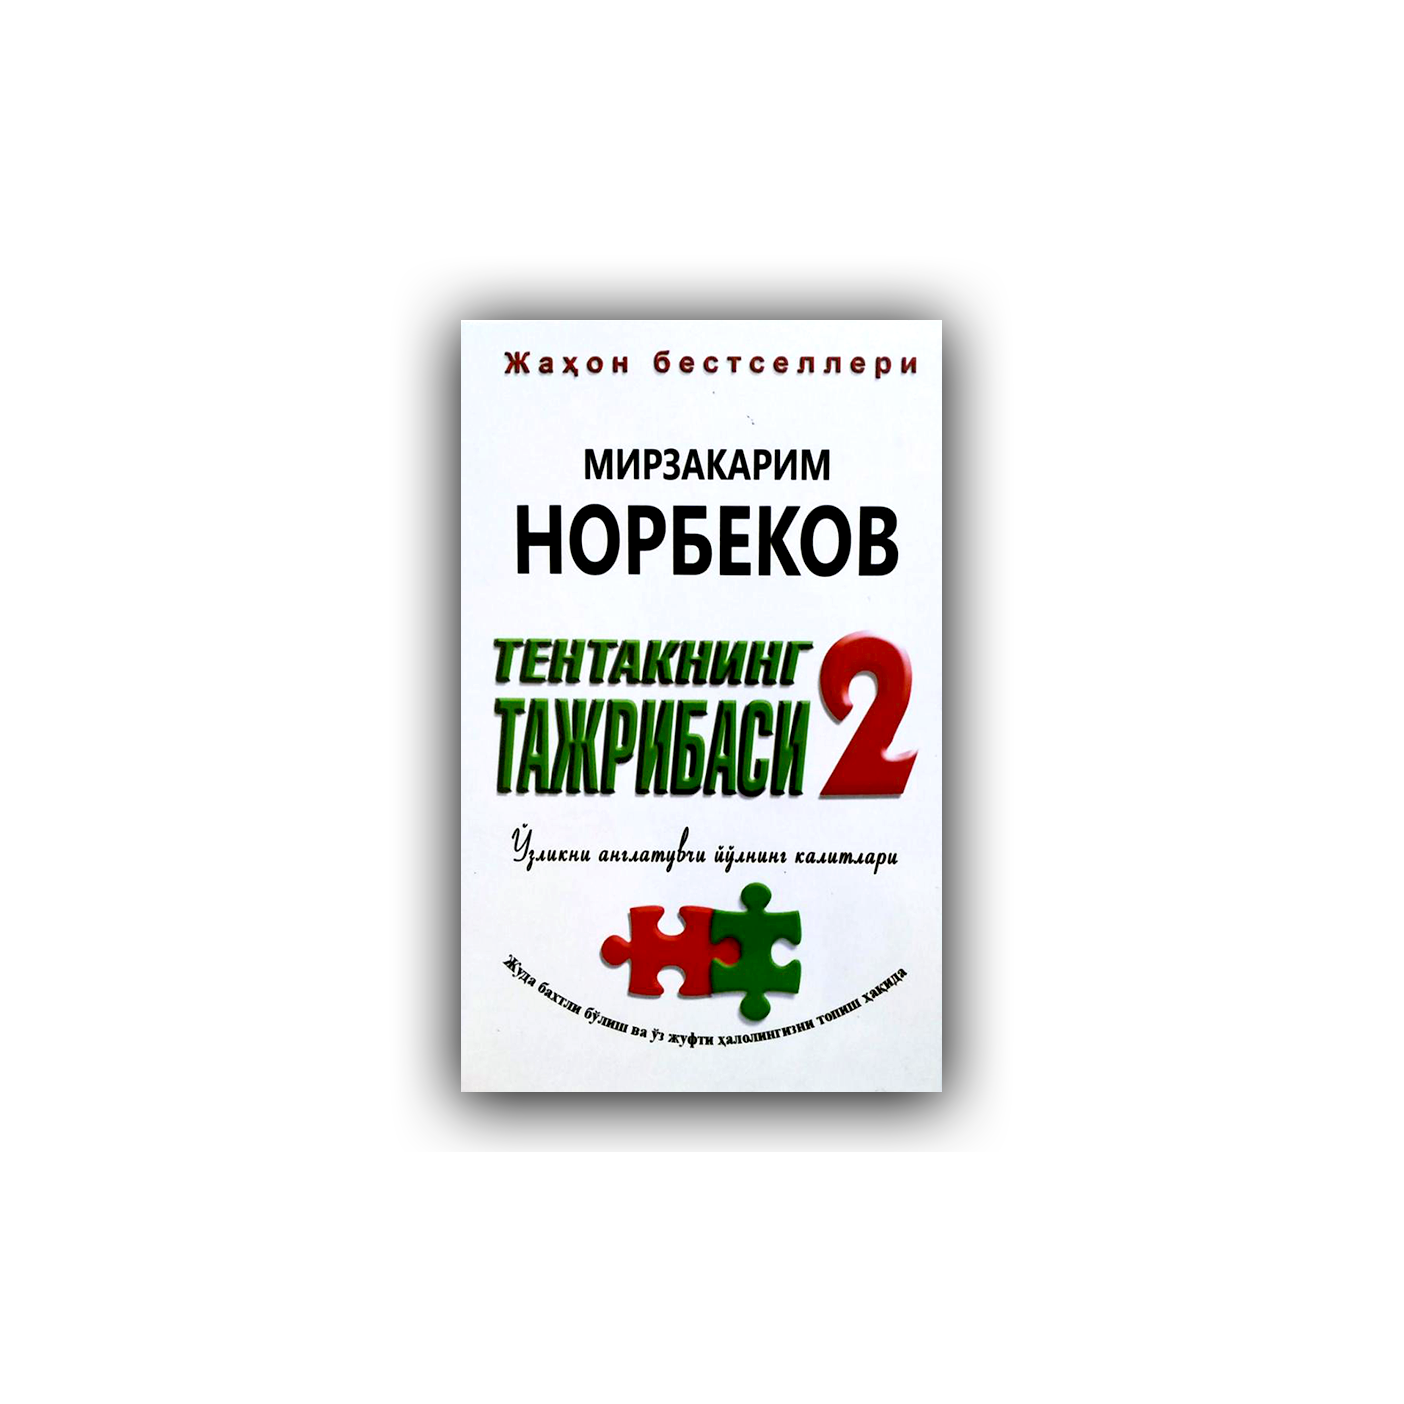 Мирзакарим Норбеков: Тентакнинг тажрибаси 2